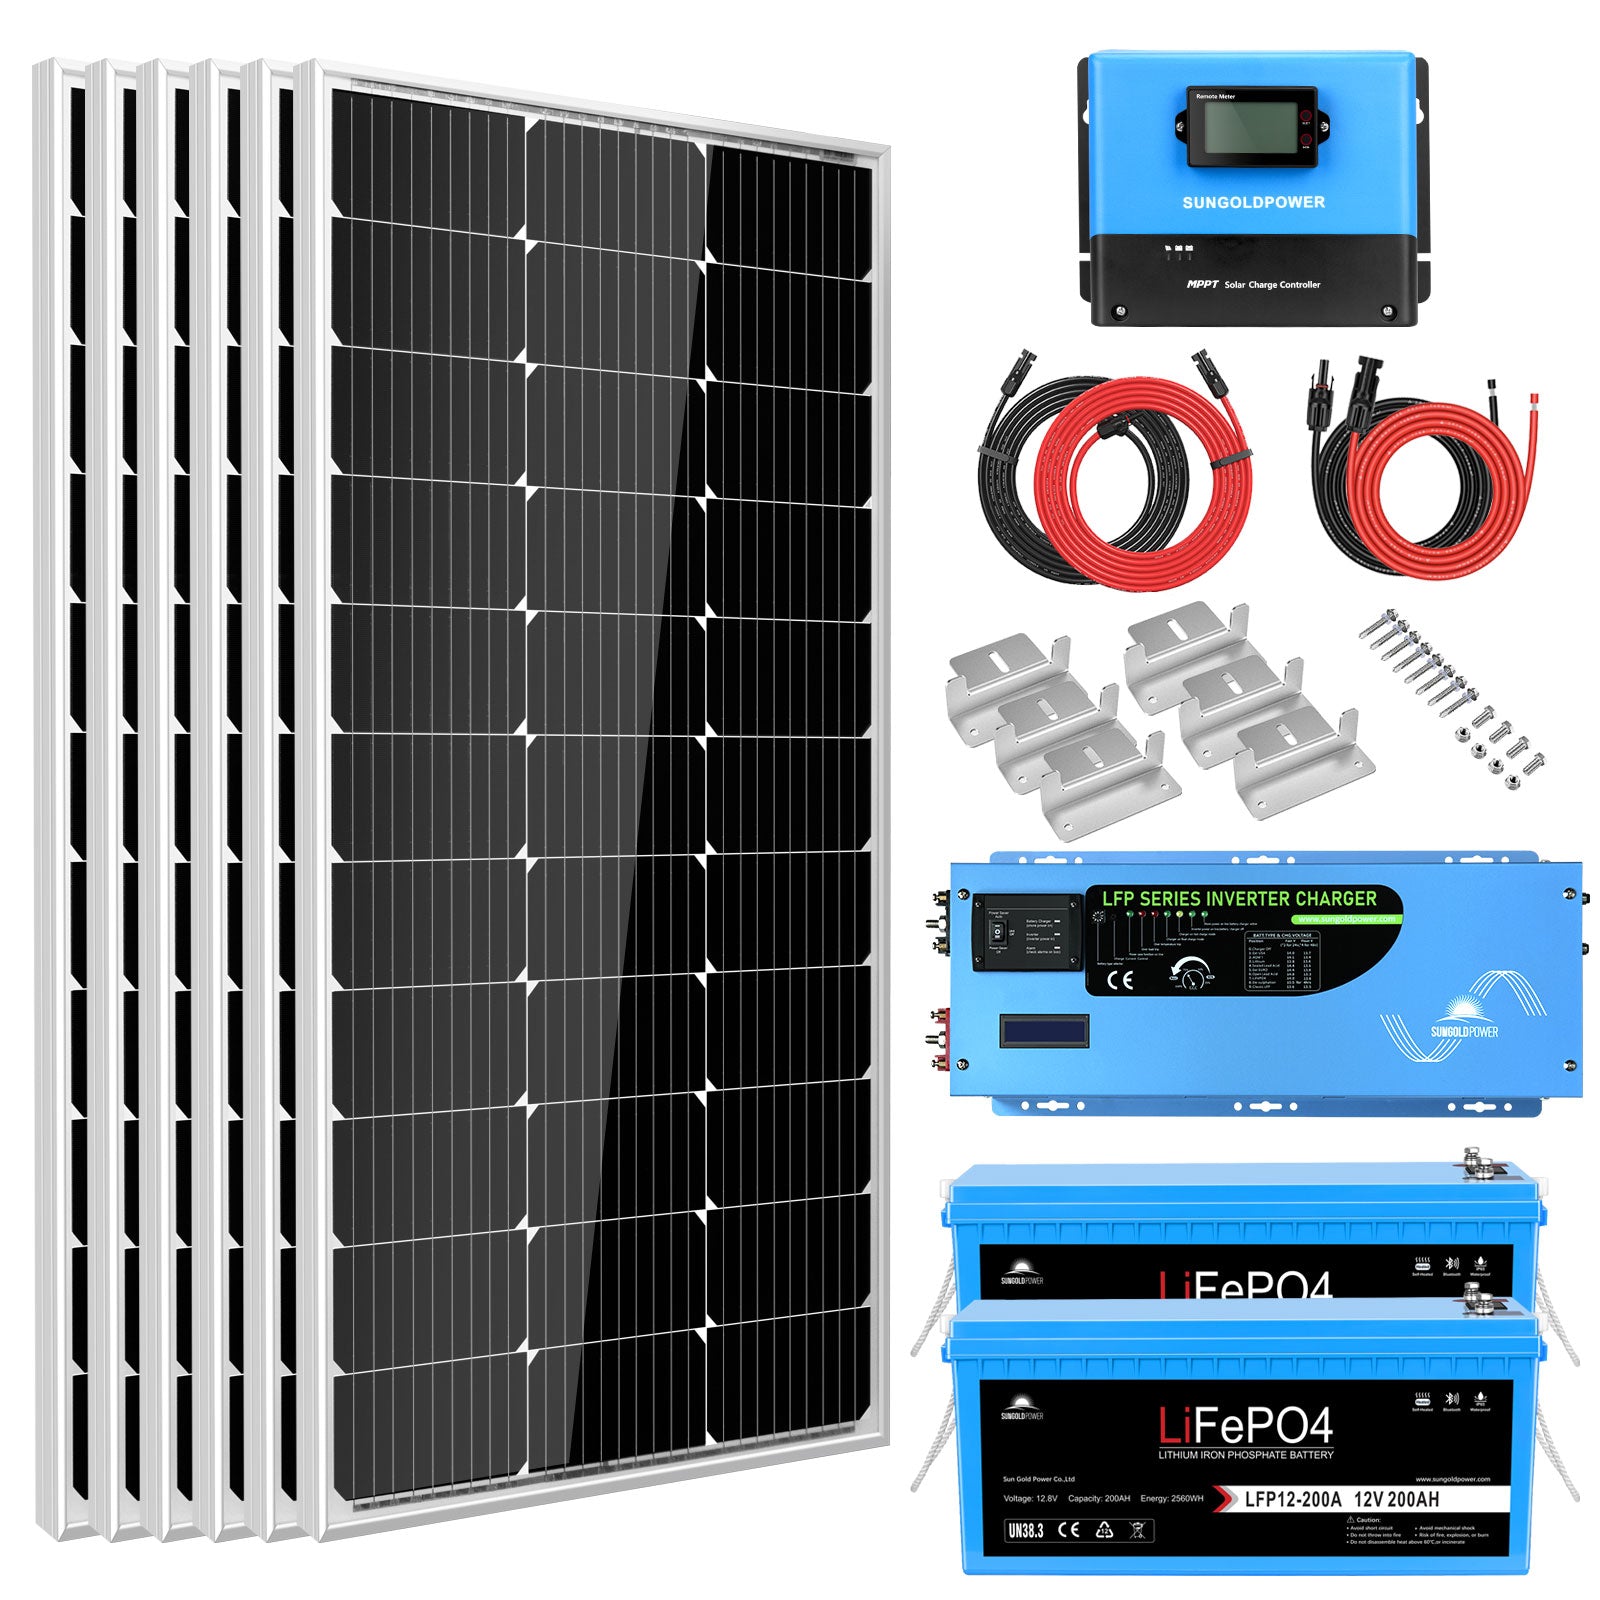 Sungold Power Off-Grid Solar Kit 3000W Inverter 12VDC 120V Output LifePO4 Battery 600 watt Solar Back Up